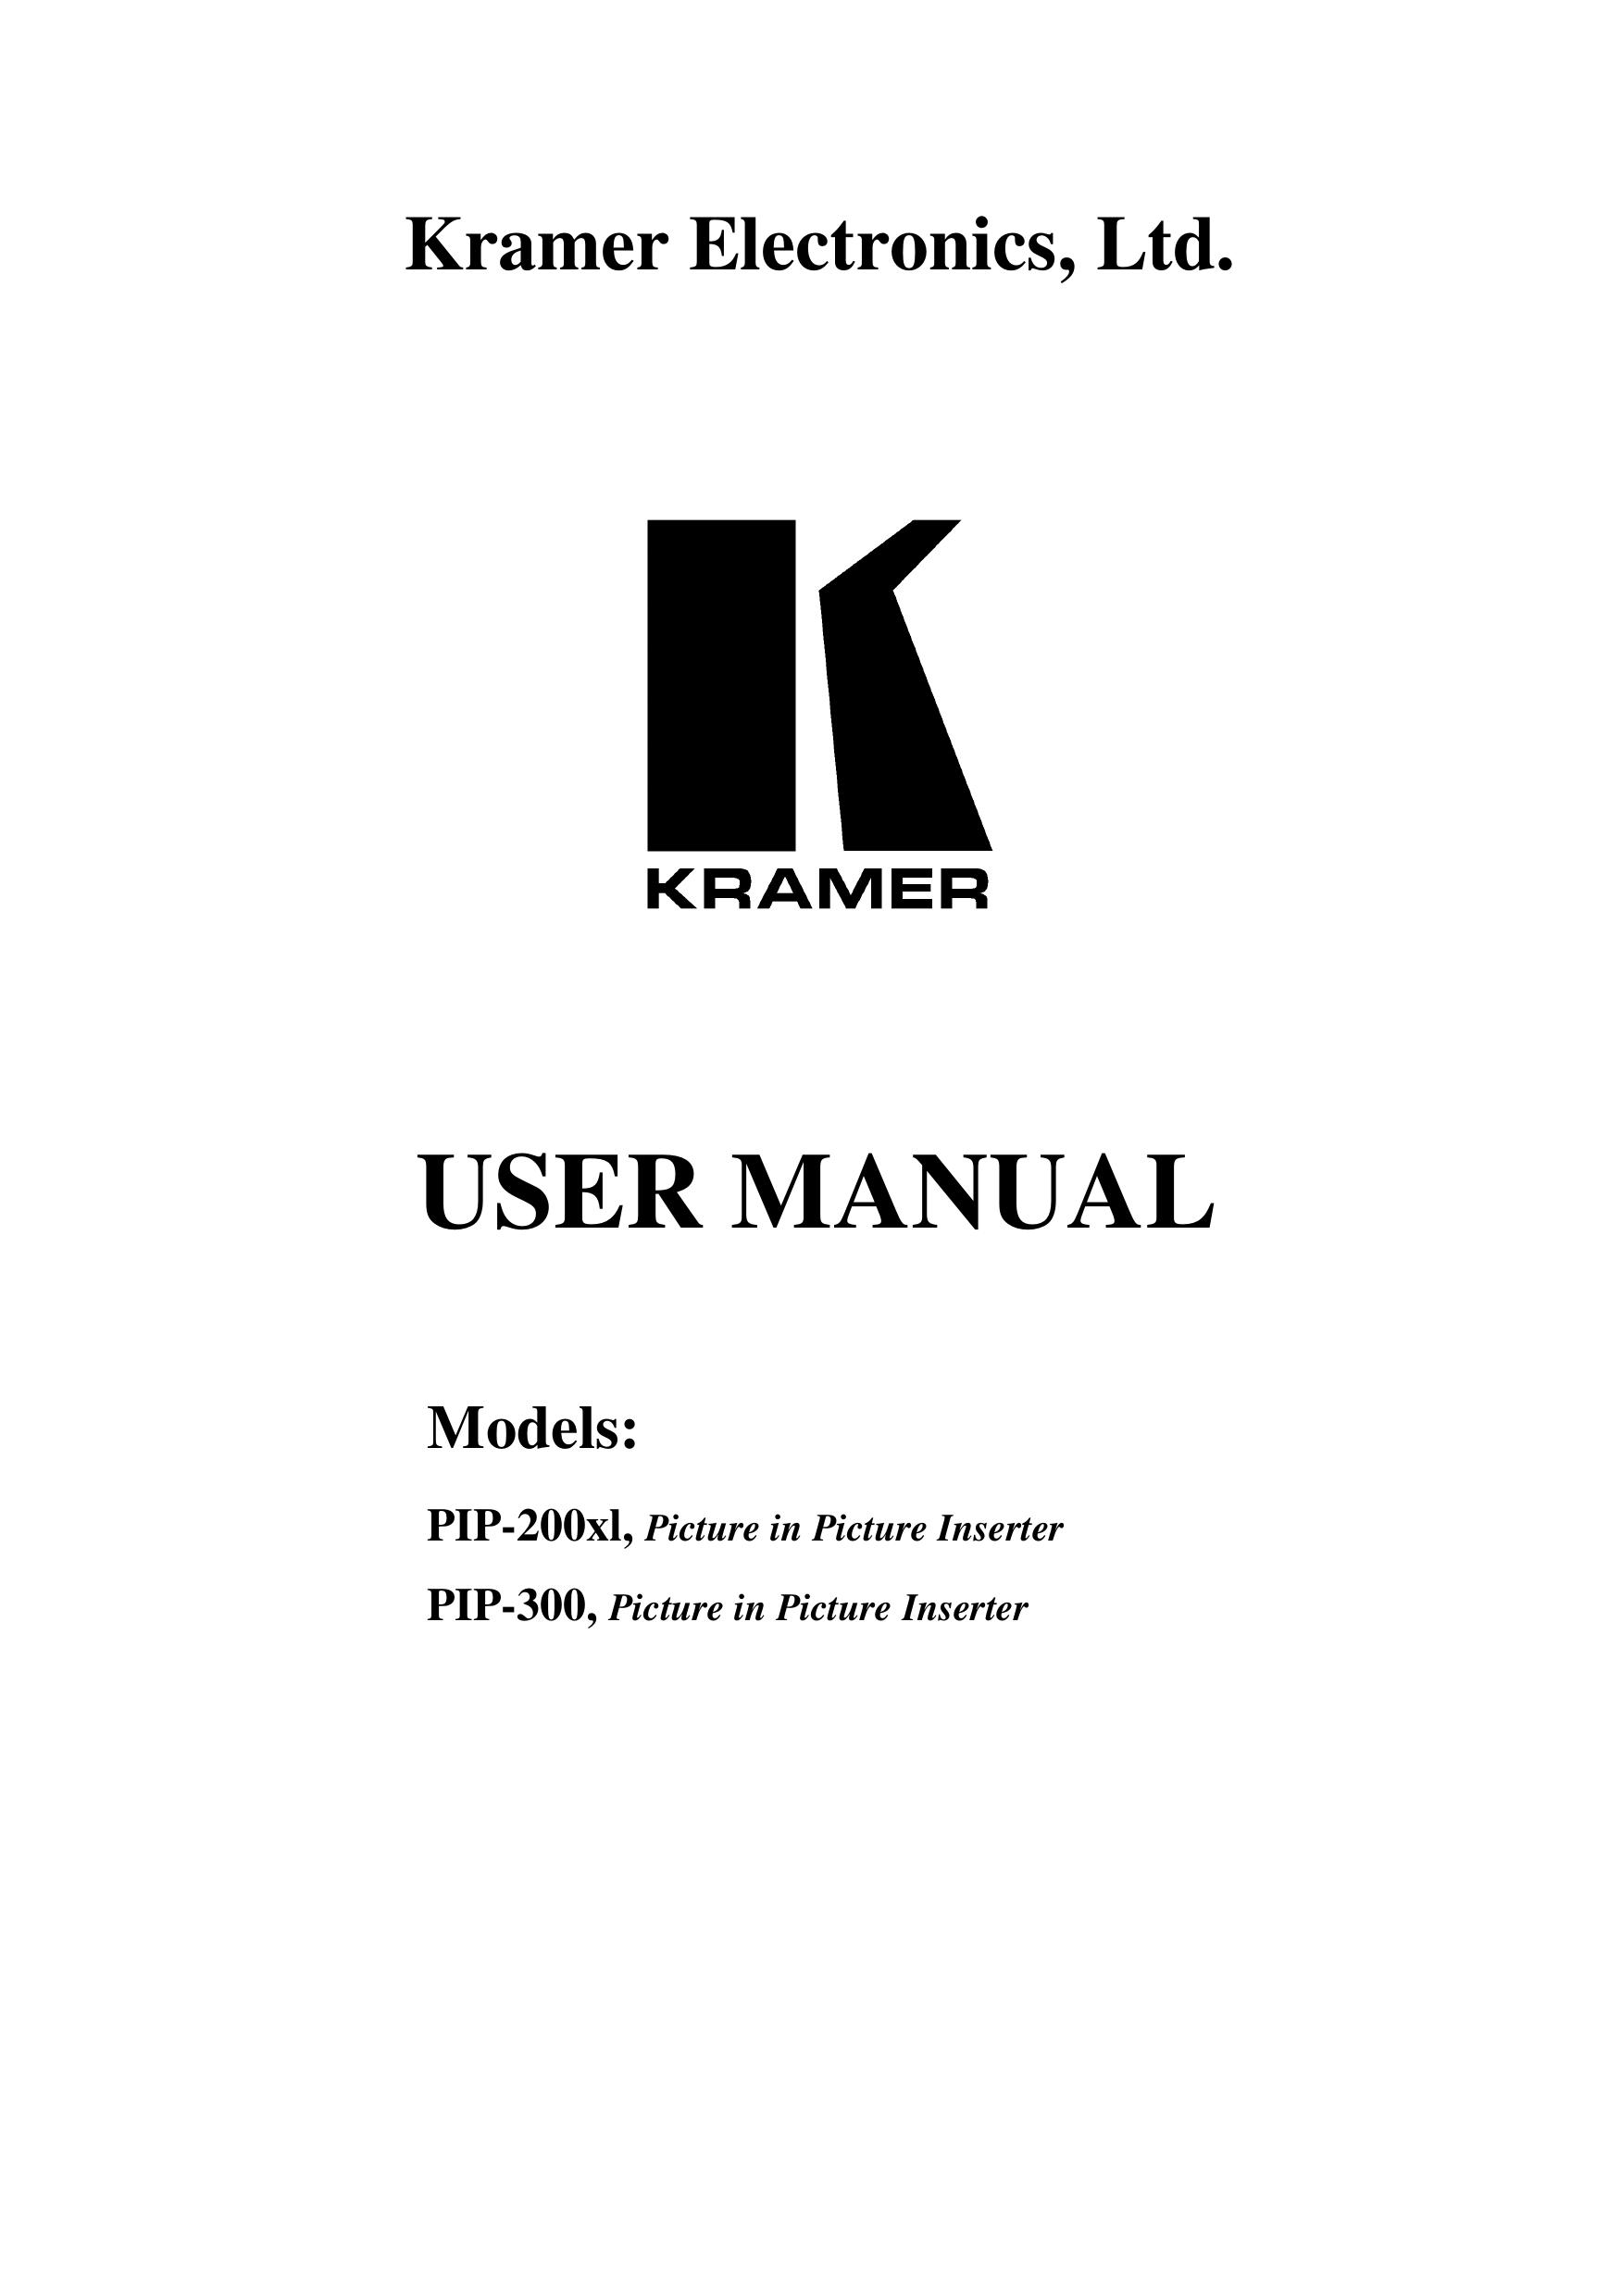 Kramer Electronics PIP-300 Photo Scanner User Manual